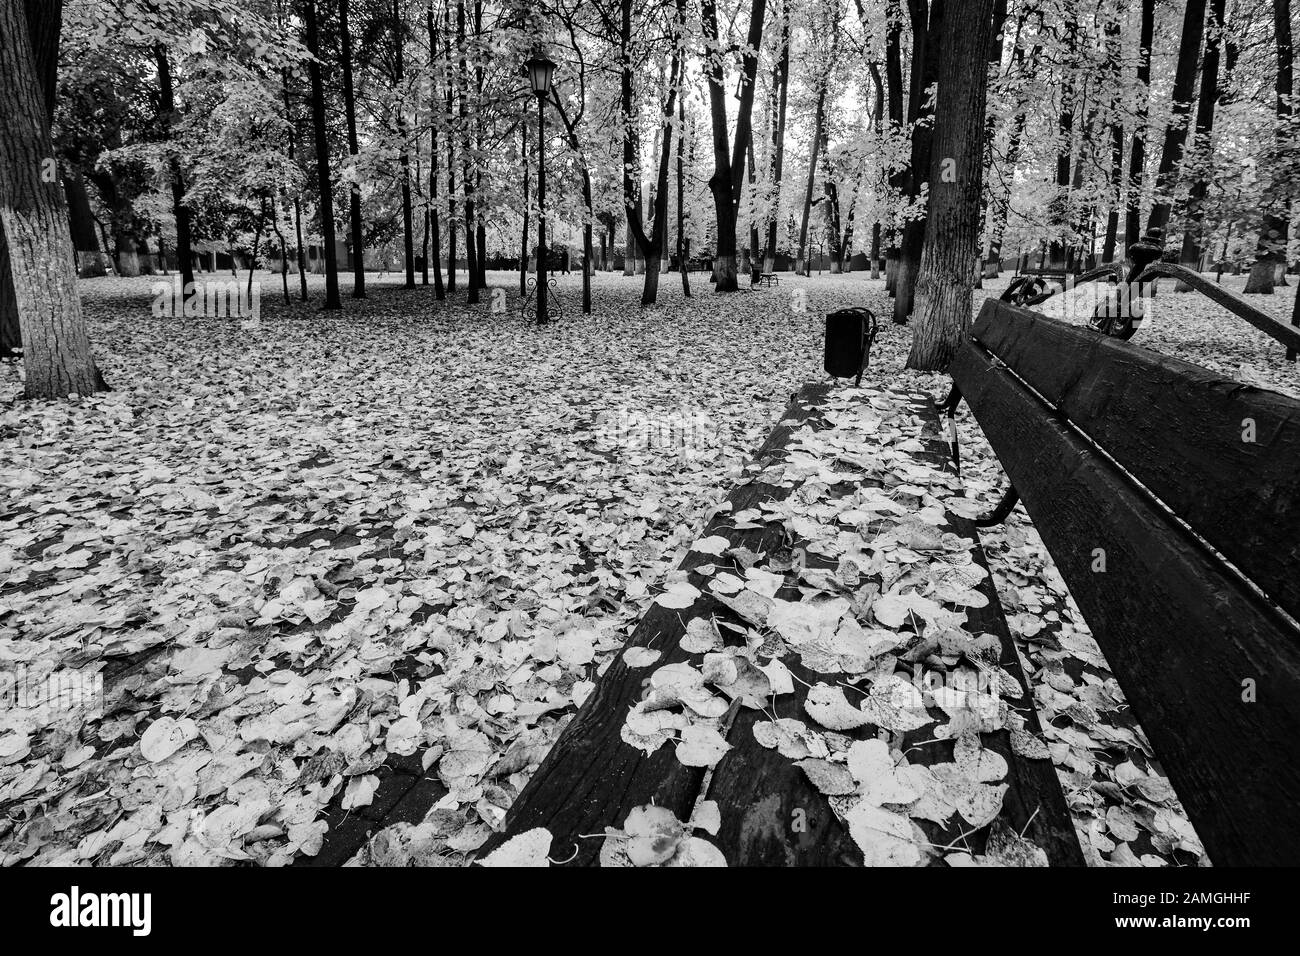 Blattfall im Park im Herbst. Landschaft mit Linde und Bank im Vordergrund an einem bewölkten Tag. Stockfoto